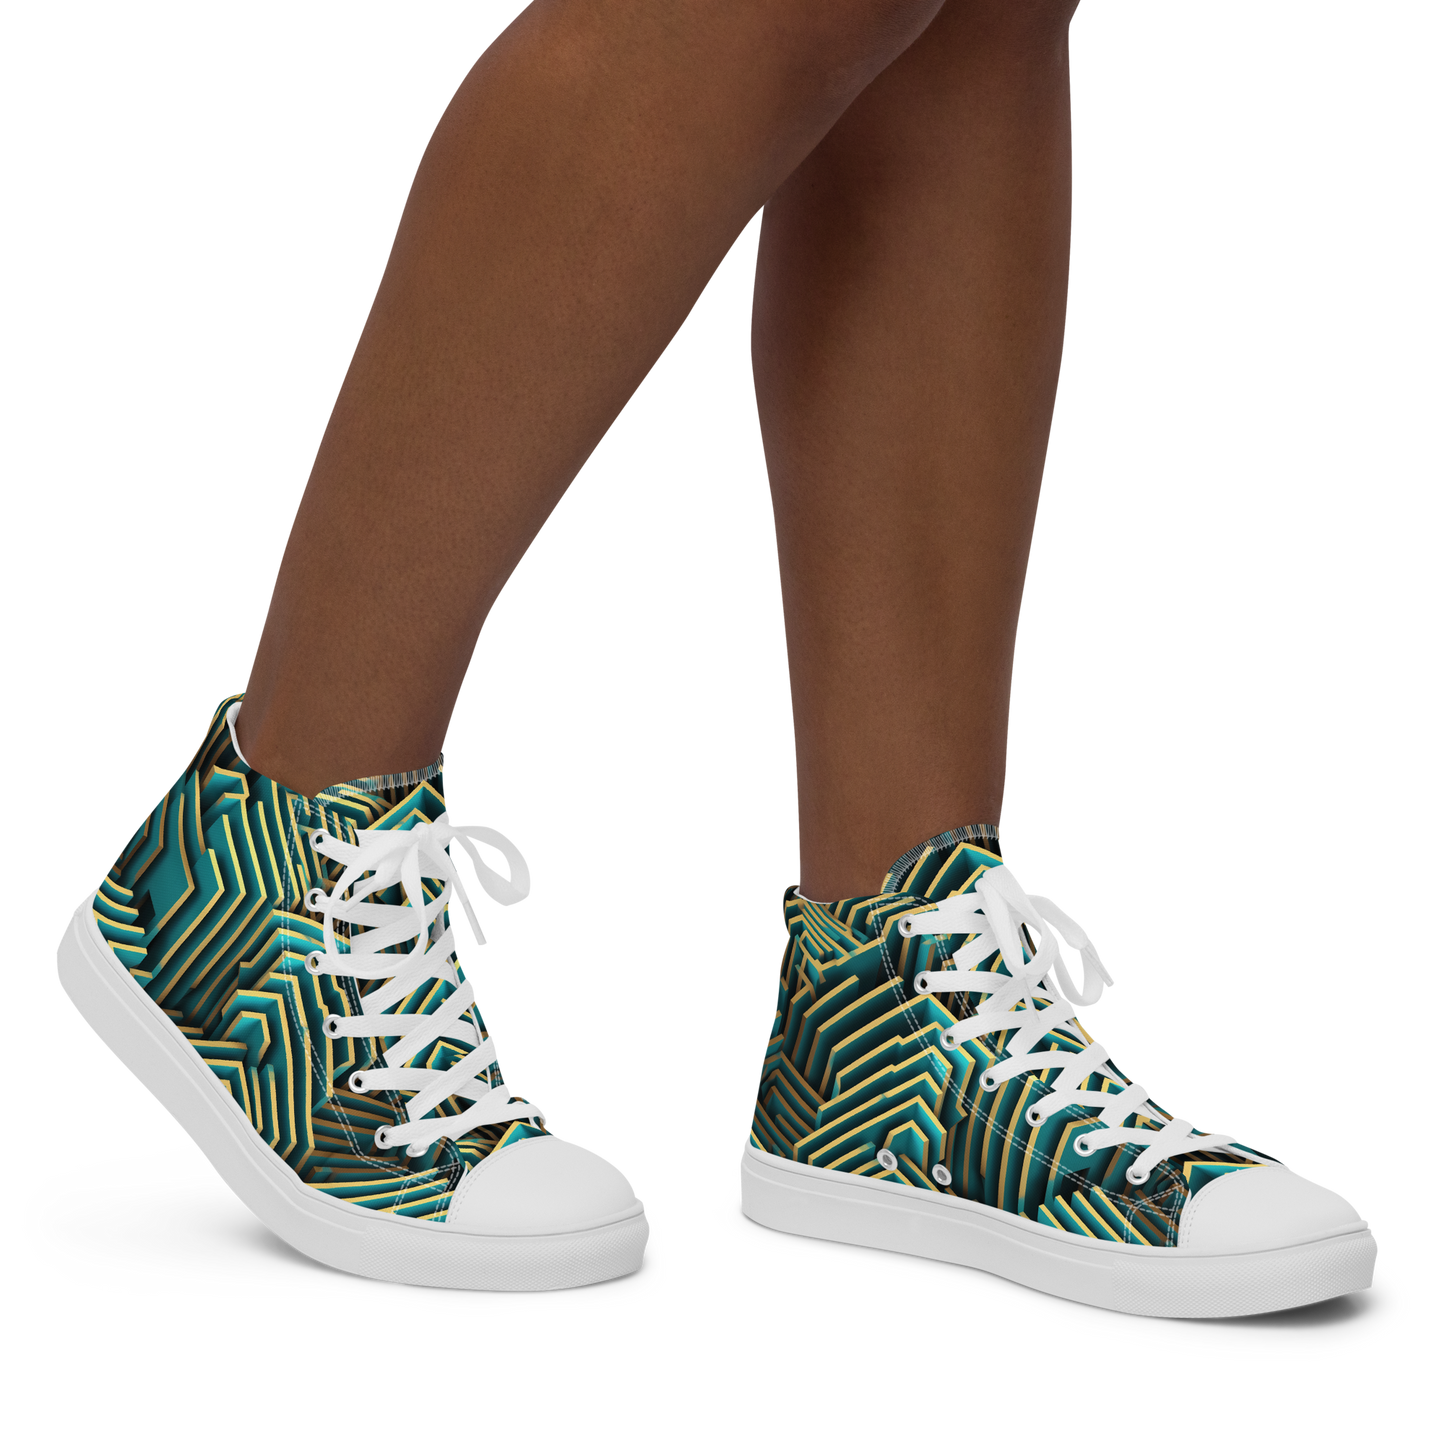 3D Maze Illusion | 3D Patterns | Women's High Top Canvas Shoes - #5